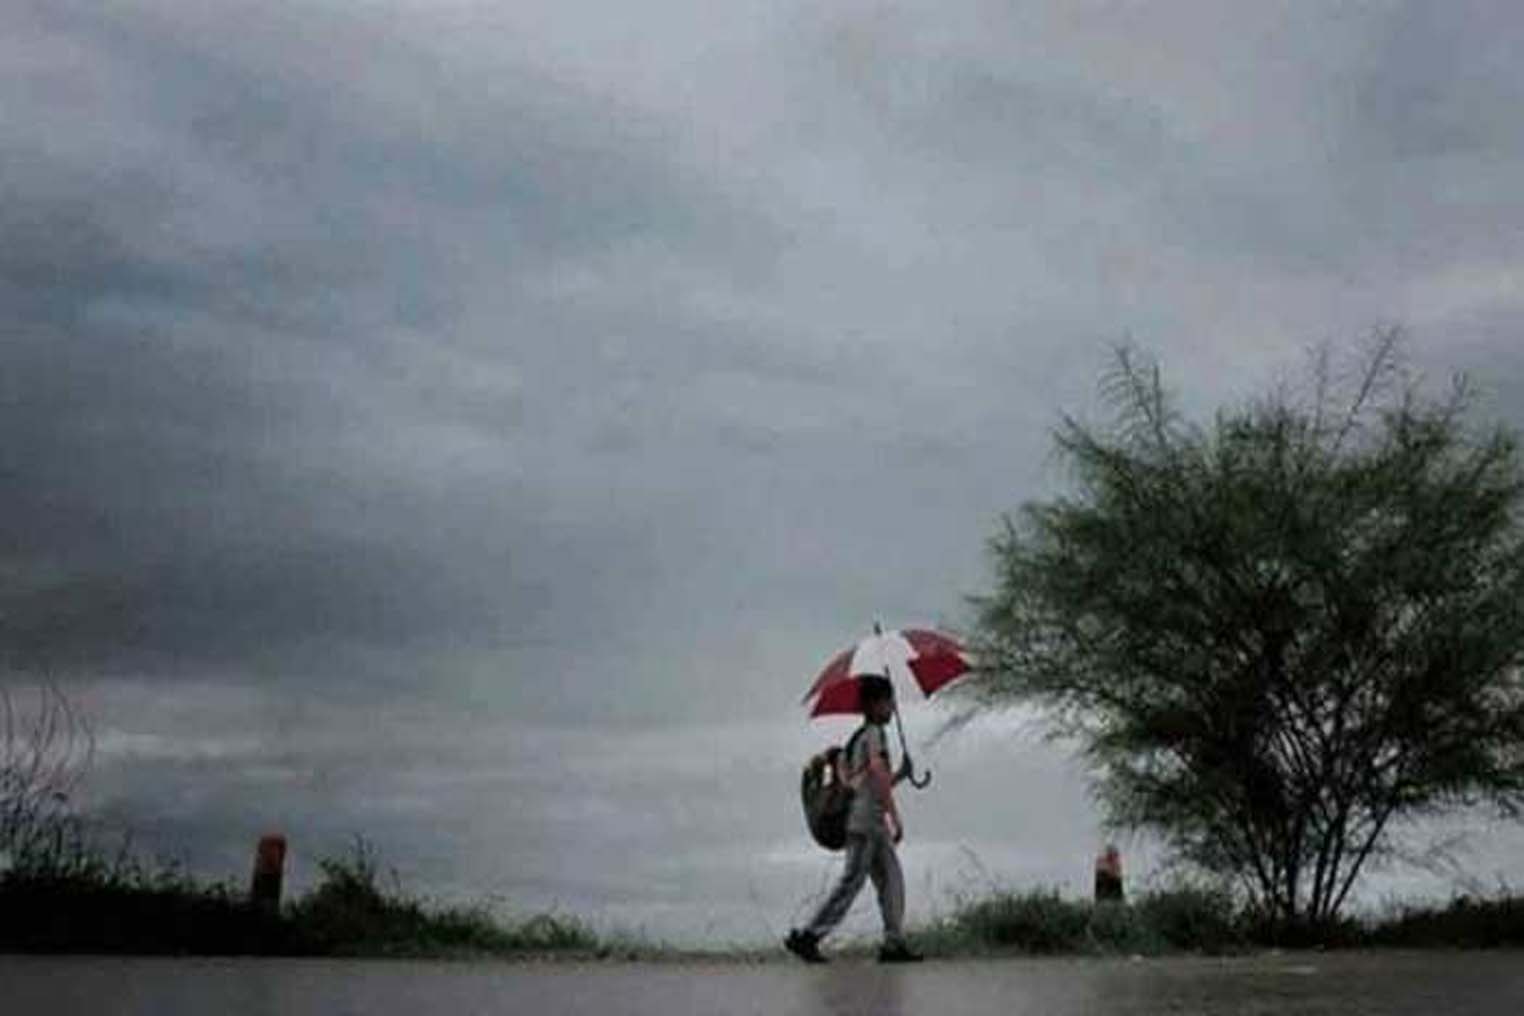 Estimate: मुंबई पहुंचा मानसून, छत्तीसगढ़ में भी जल्द ही शुरू होगी झमाझम बारिश...